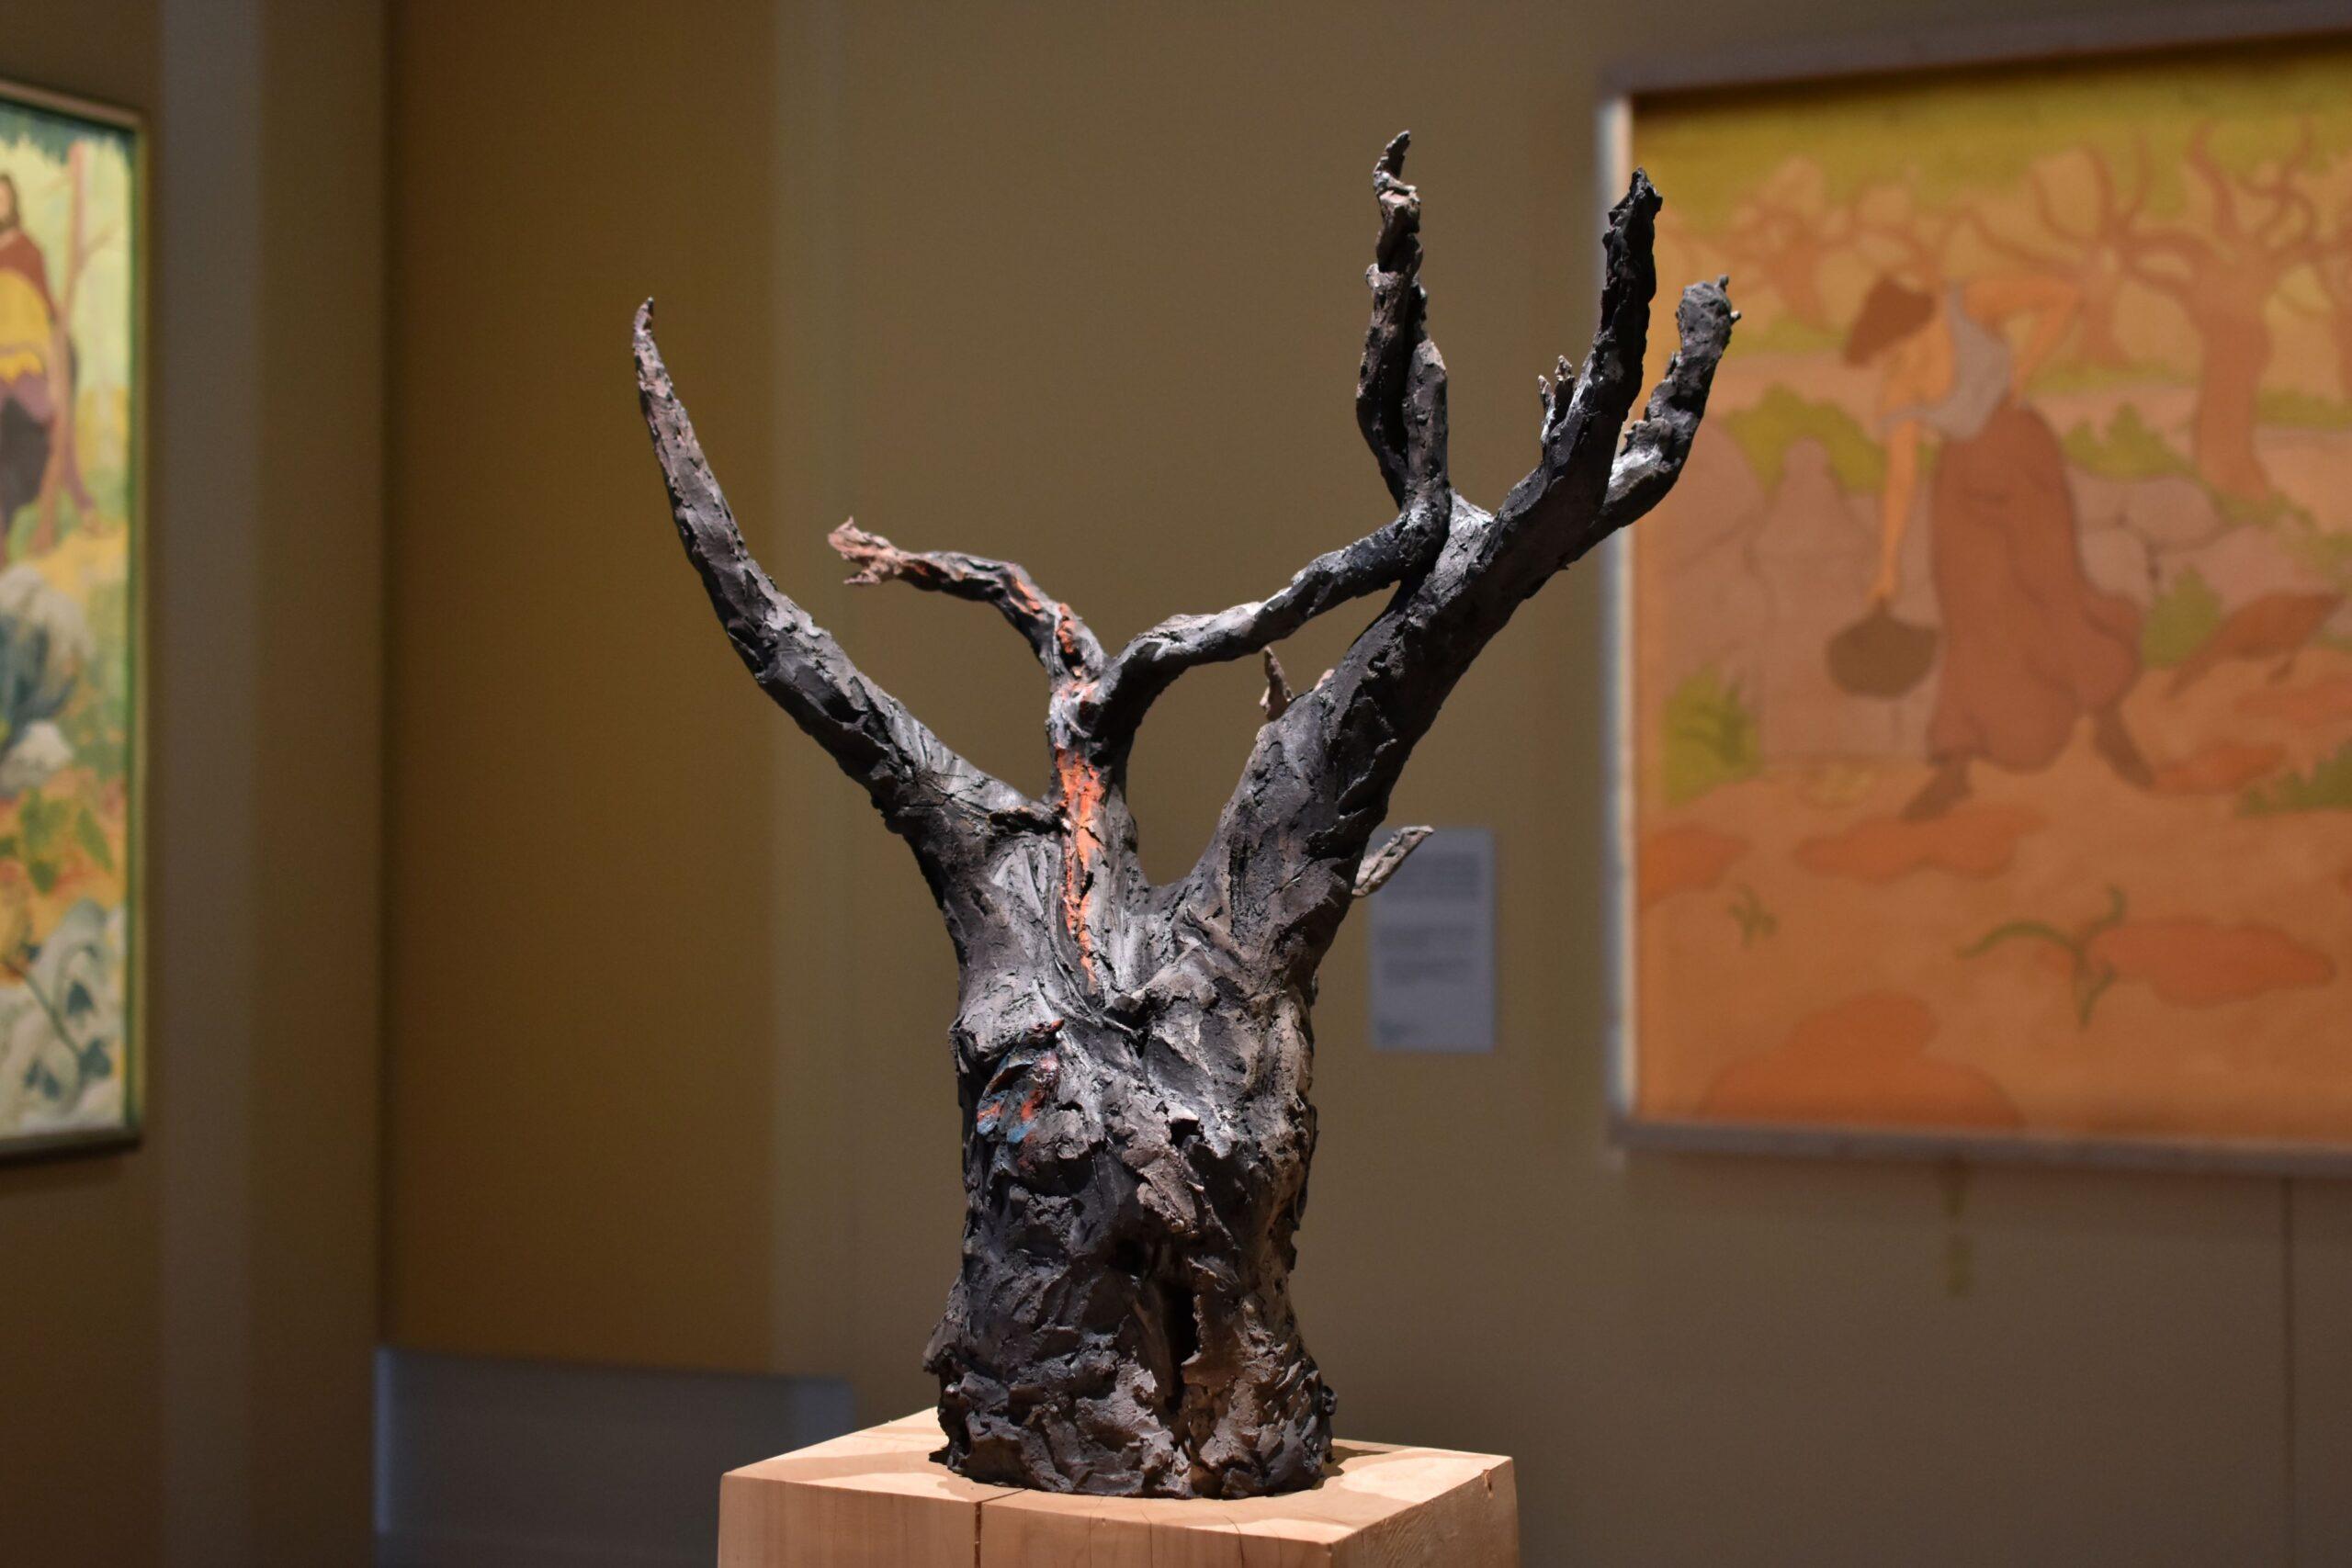 World-tree IV ist eine einzigartige Skulptur der französischen Künstlerin Cécile Raynal aus rauchgebranntem Steinzeug und Pigmenten mit den Maßen 90 × 70 × 55 cm (35,4 × 27,6 × 21,7 in). 

Mit der Verwendung von Zweigen, die Bäume darstellen oder